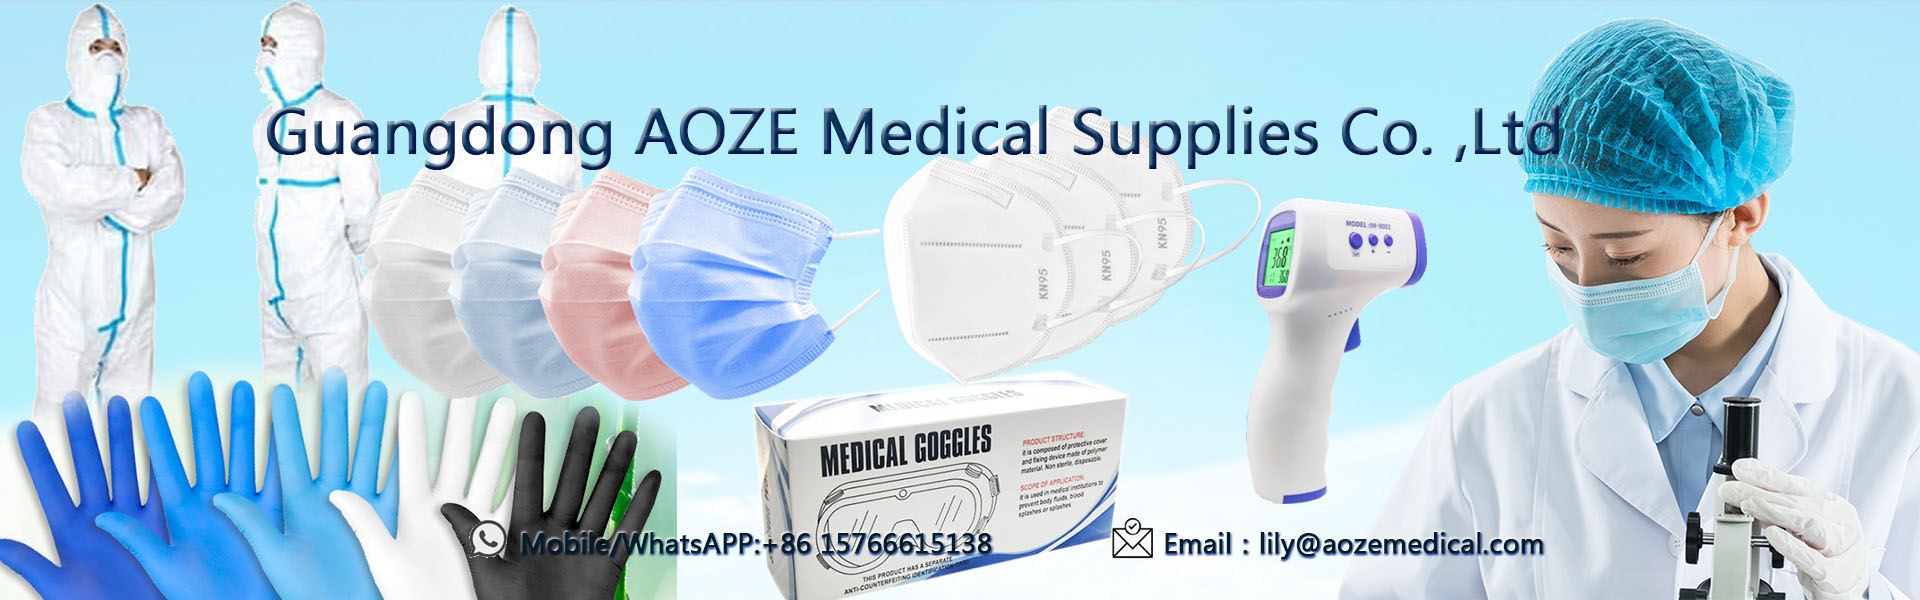 3-gang engangsmaske, kn95 ansigtsmaske, kirurgisk ansigtsmaske,Guangdong AOZE Medical Supplies Co.,Ltd